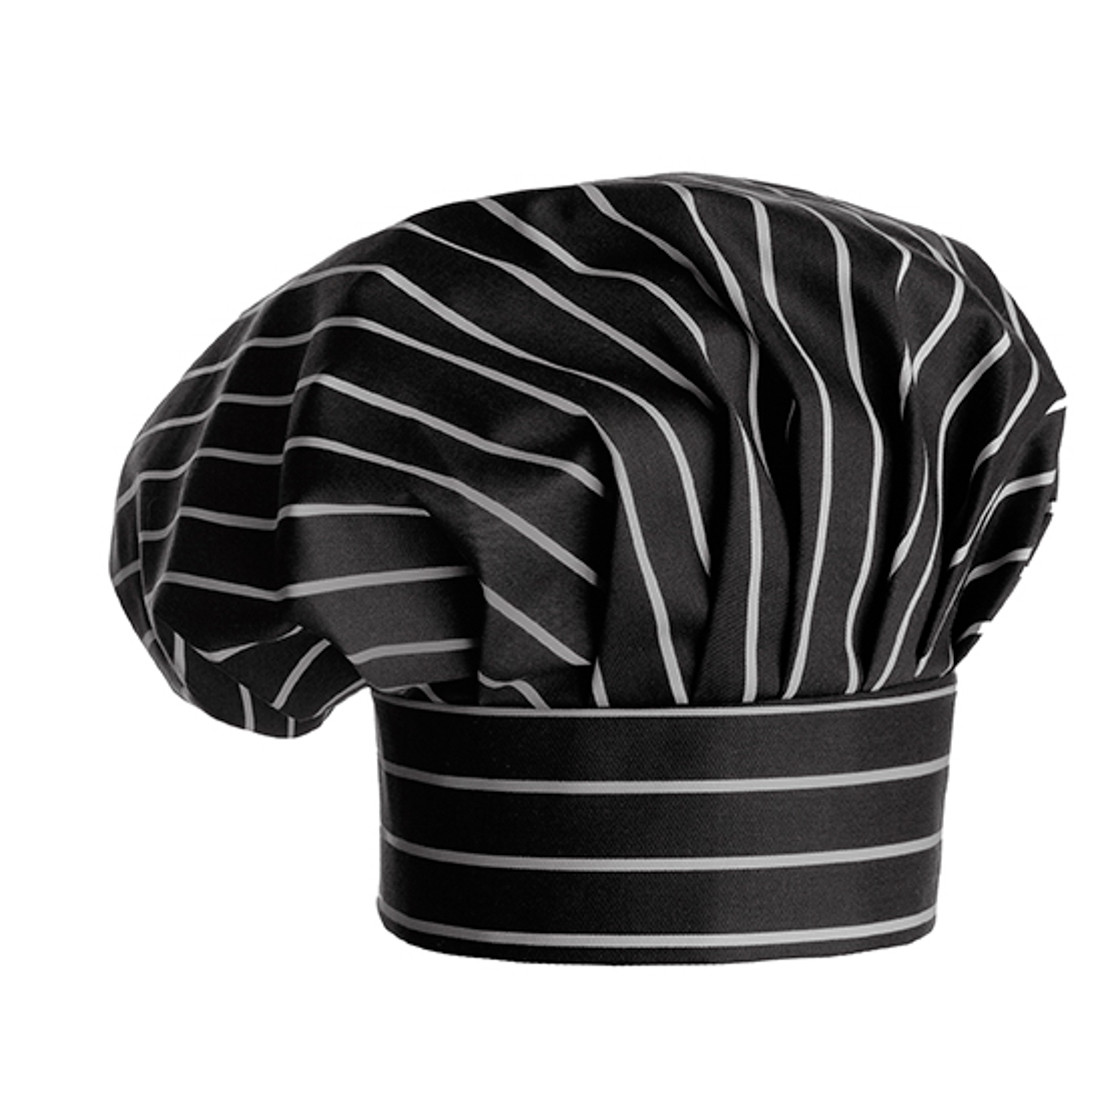 Cappello cuoco - Abbigliamento di protezione